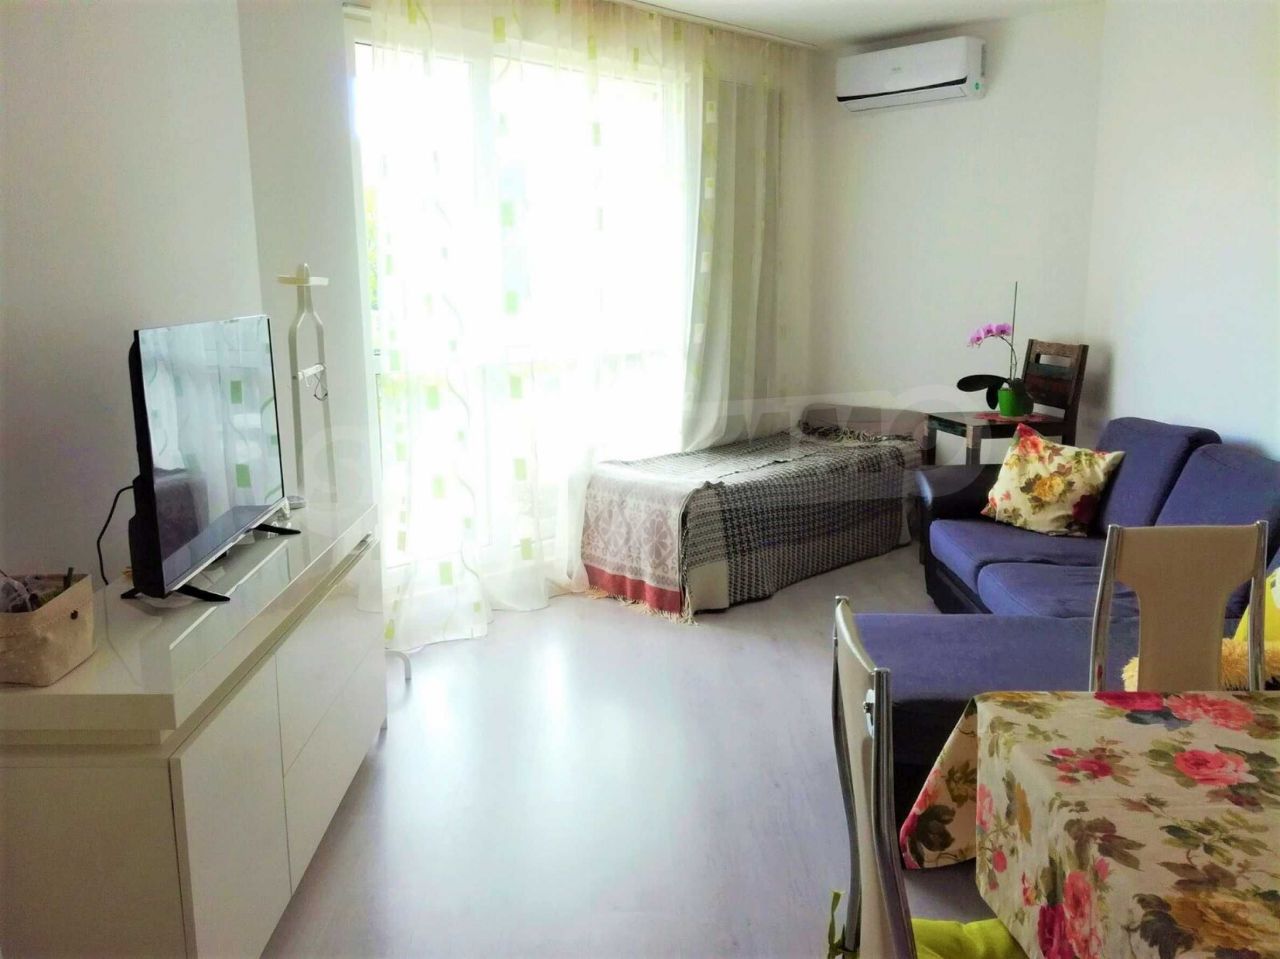 Apartment in Varna, Bulgaria, 58 sq.m - picture 1